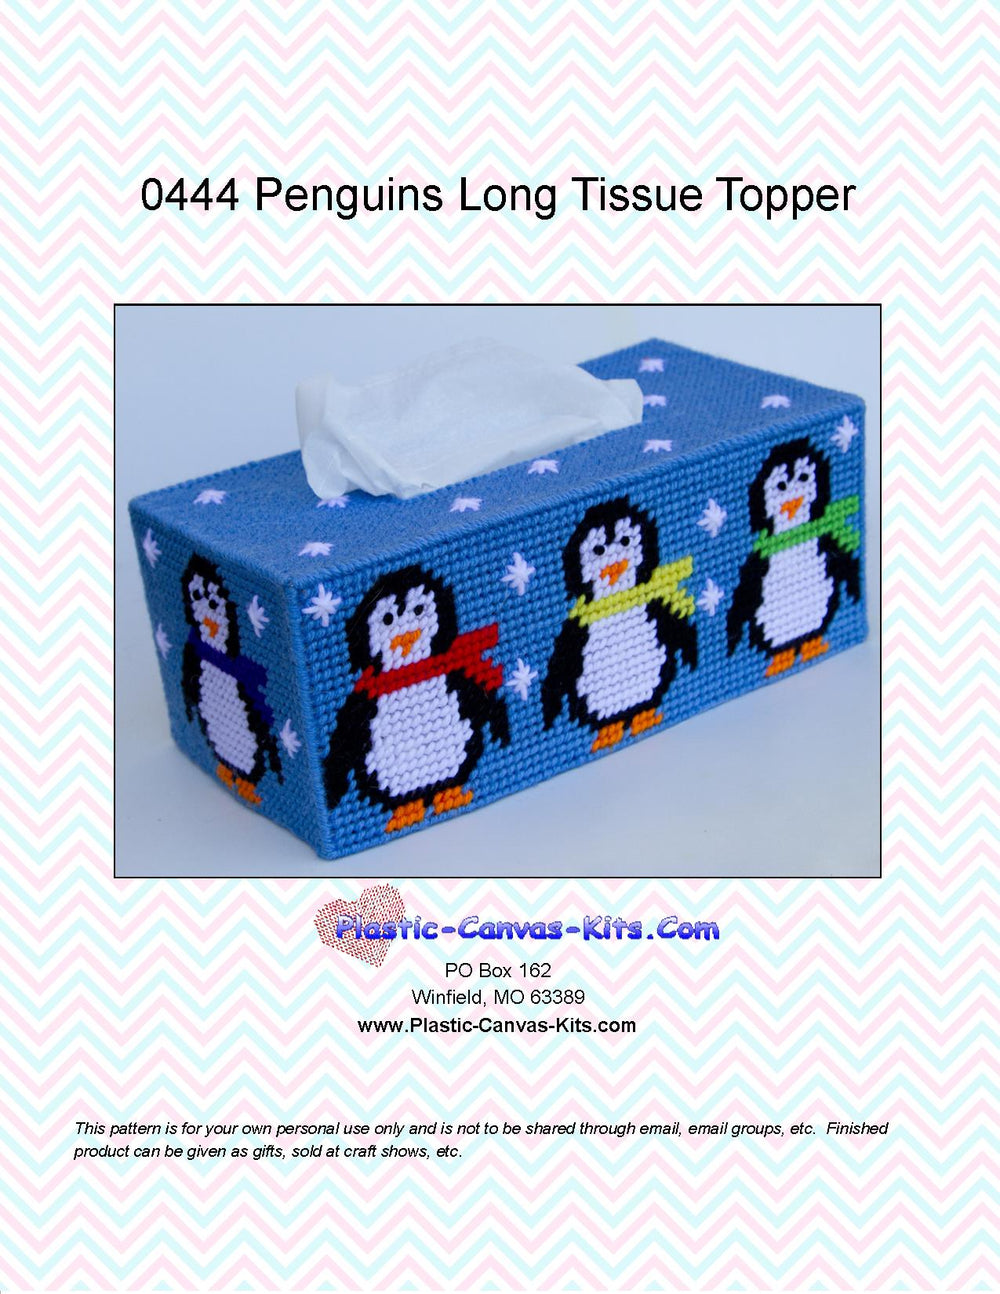 Penguin Long Tissue Topper